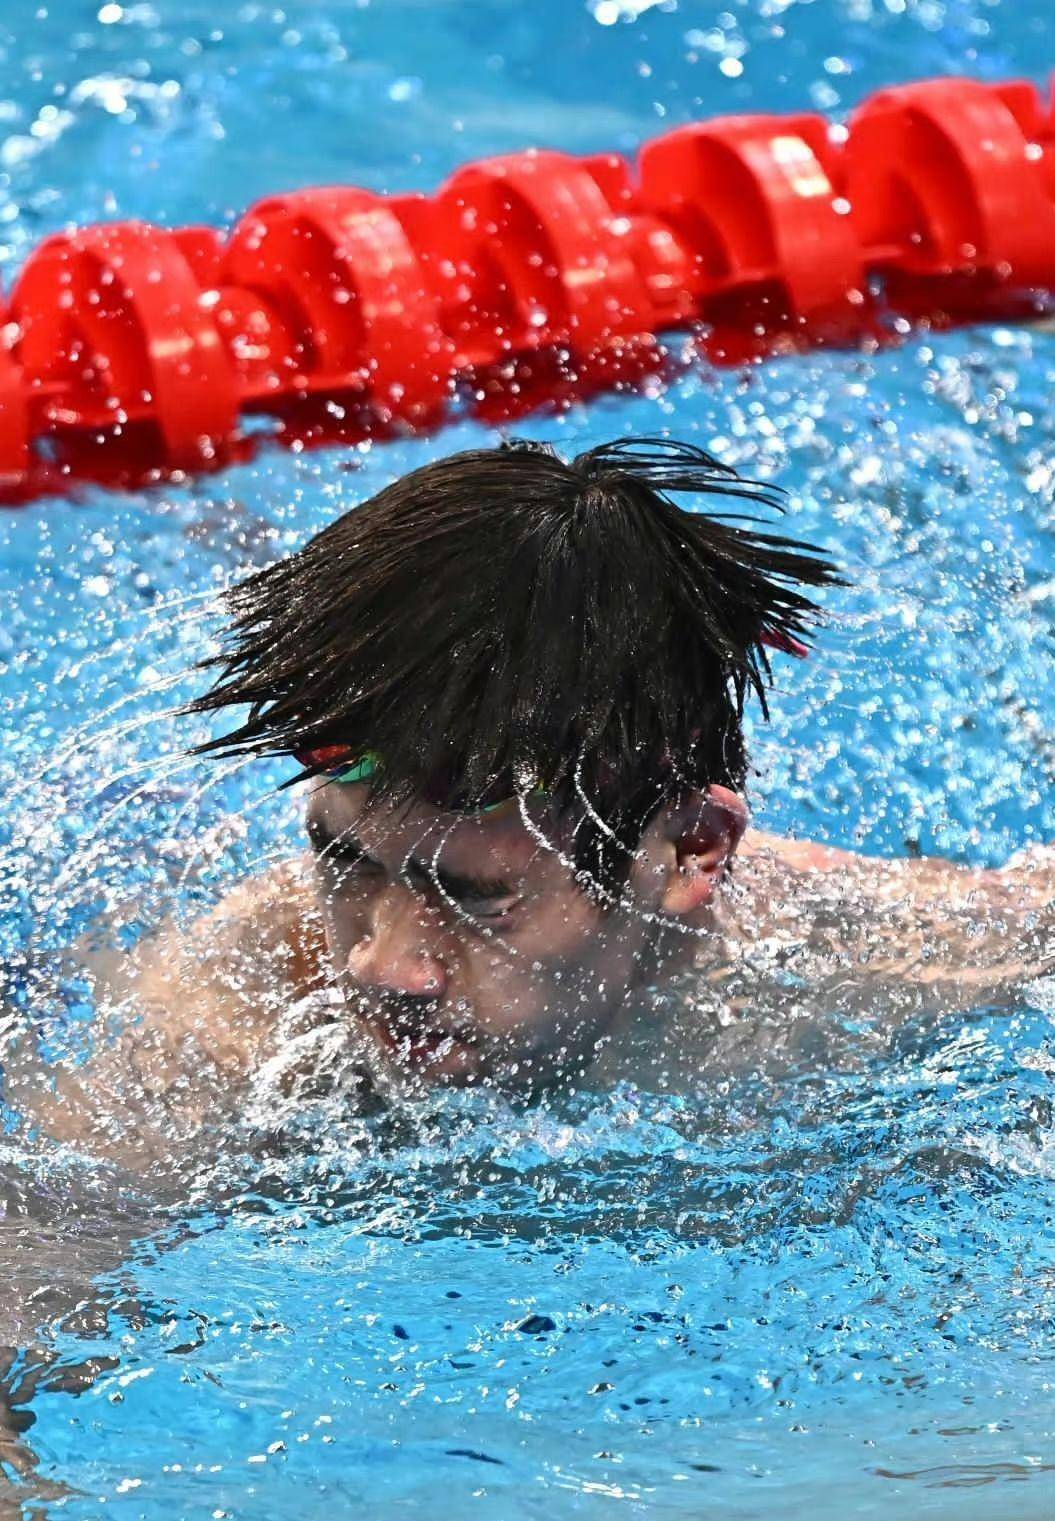 登顶飞鱼大战!潘展乐夺得世锦赛男子100米自由泳金牌